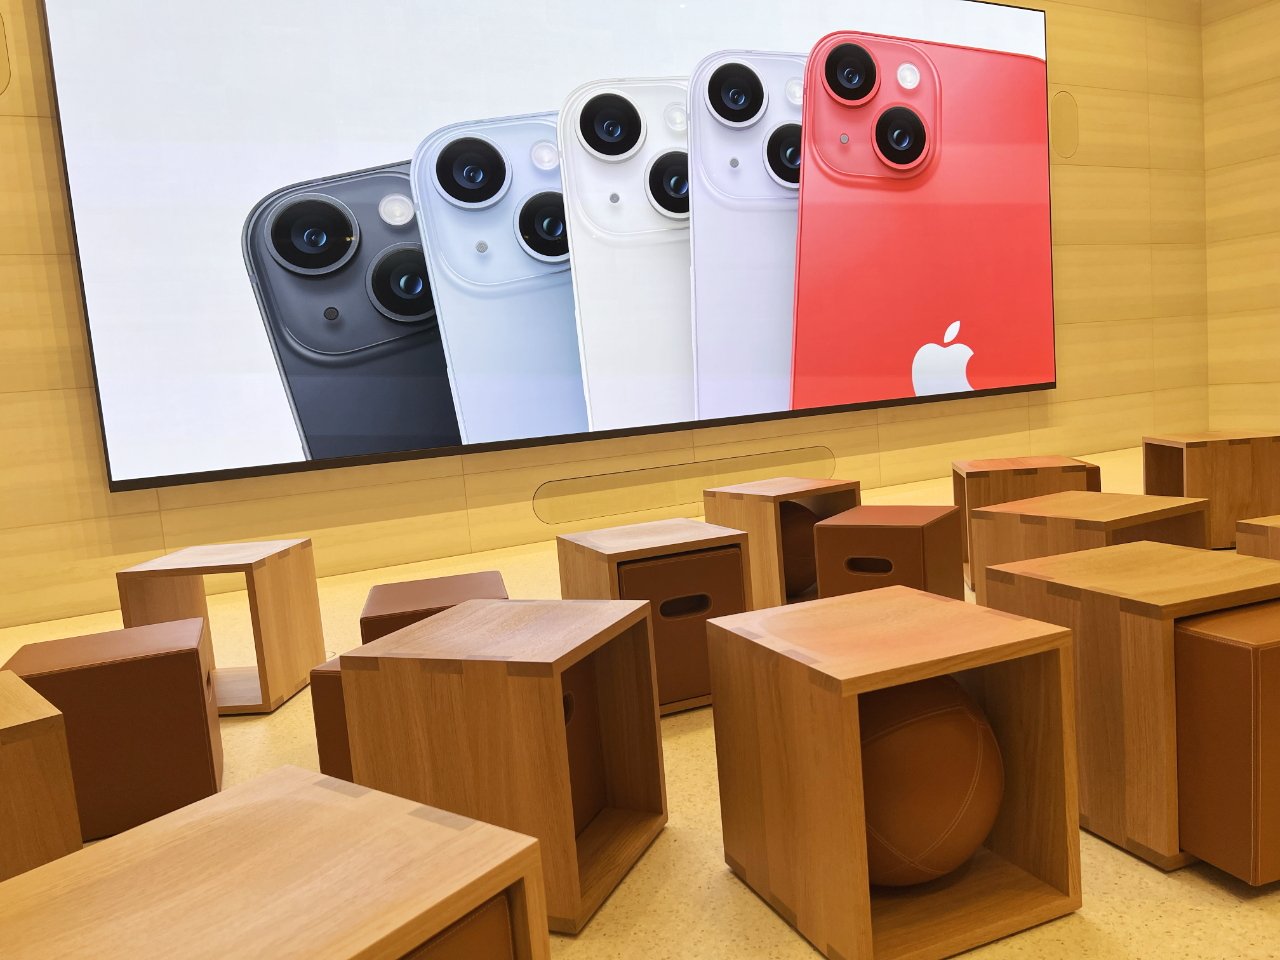 Сорок деревянных кубиков с дополнительными местами в большинстве из них в разделе «Сегодня в Apple».